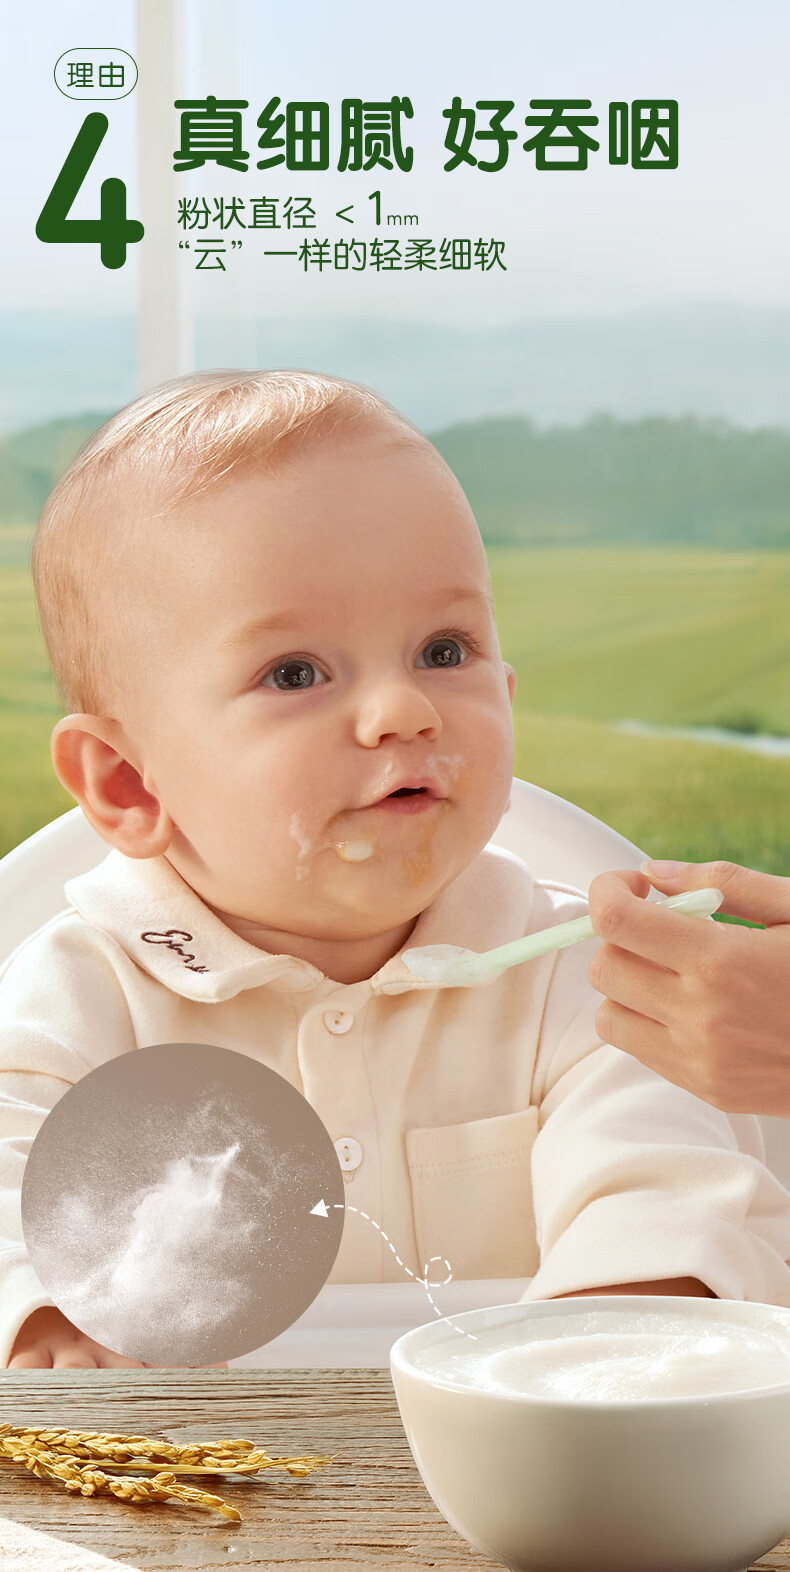 小皮(LittleFreddie)原味有机高铁大米粉宝宝辅食婴儿营养米糊钙铁锌米粉(6+月龄适用)160g*1盒